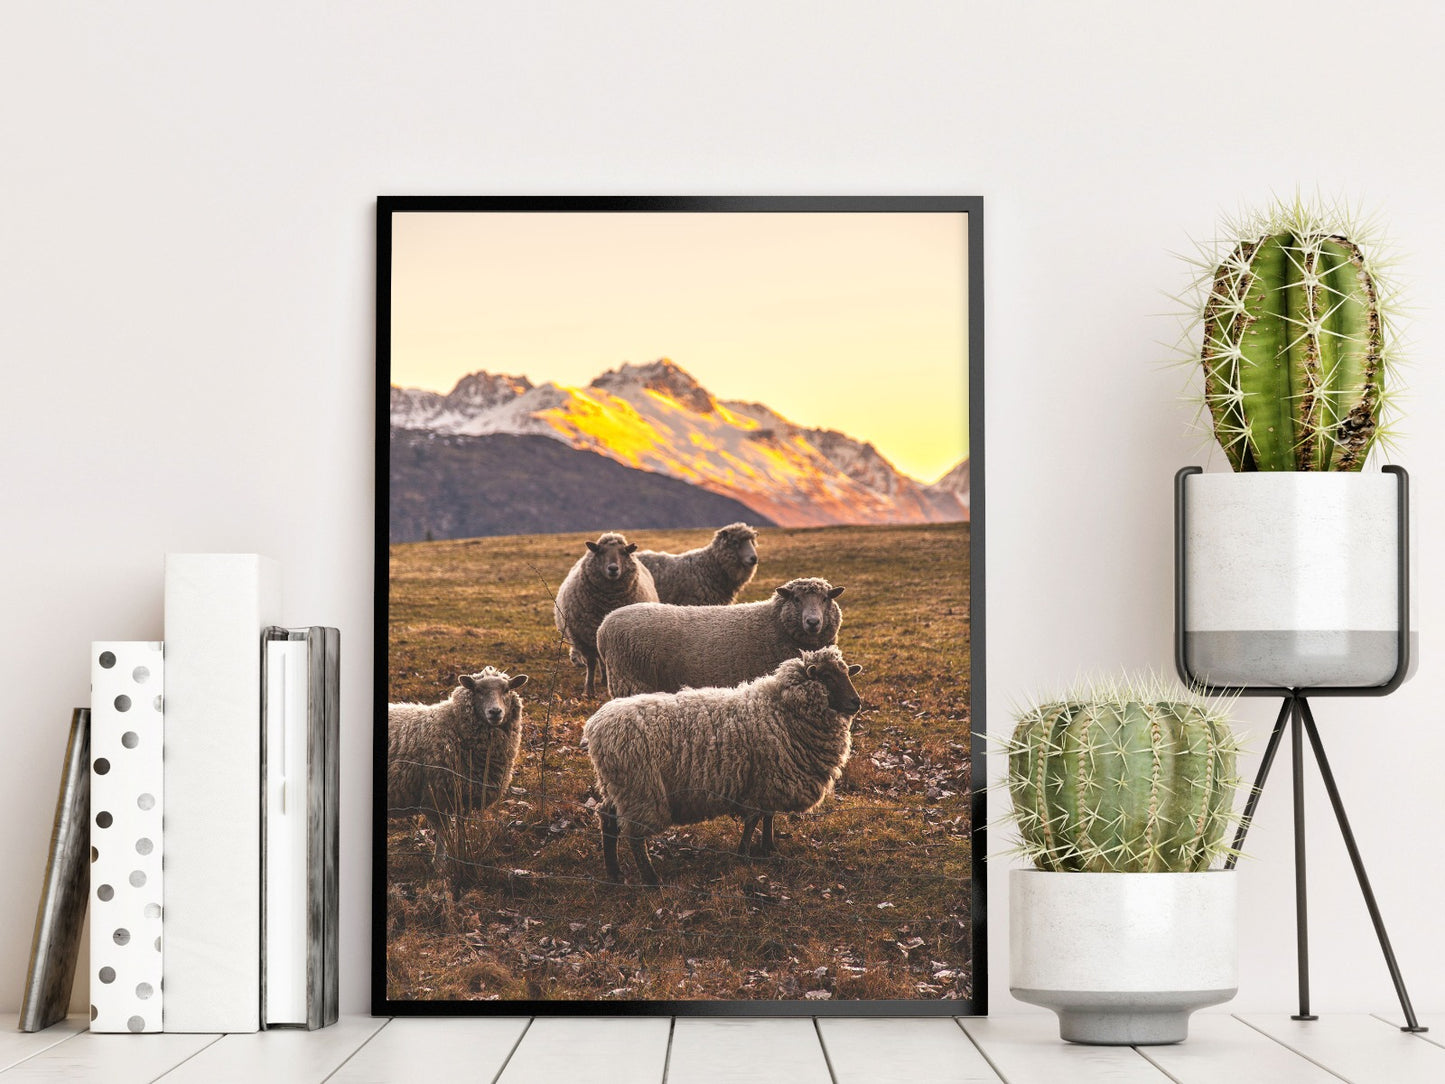  Aufzeichnungen über neuseeländische Schafe